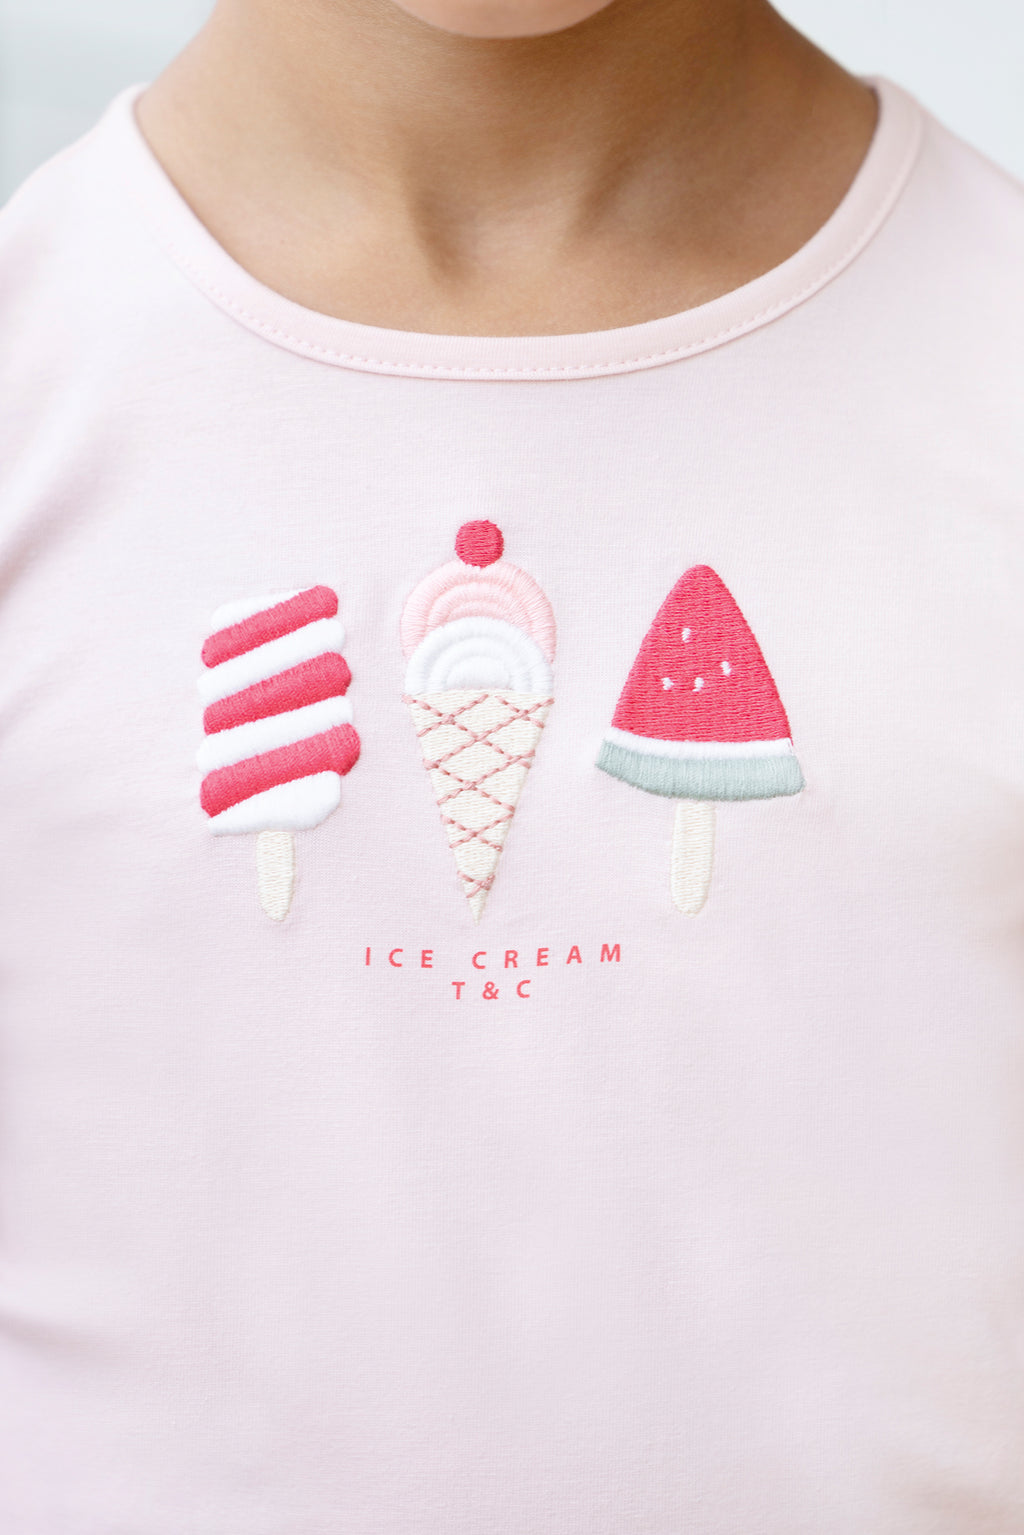 Camiseta - Rosa pálido Ilustración helado